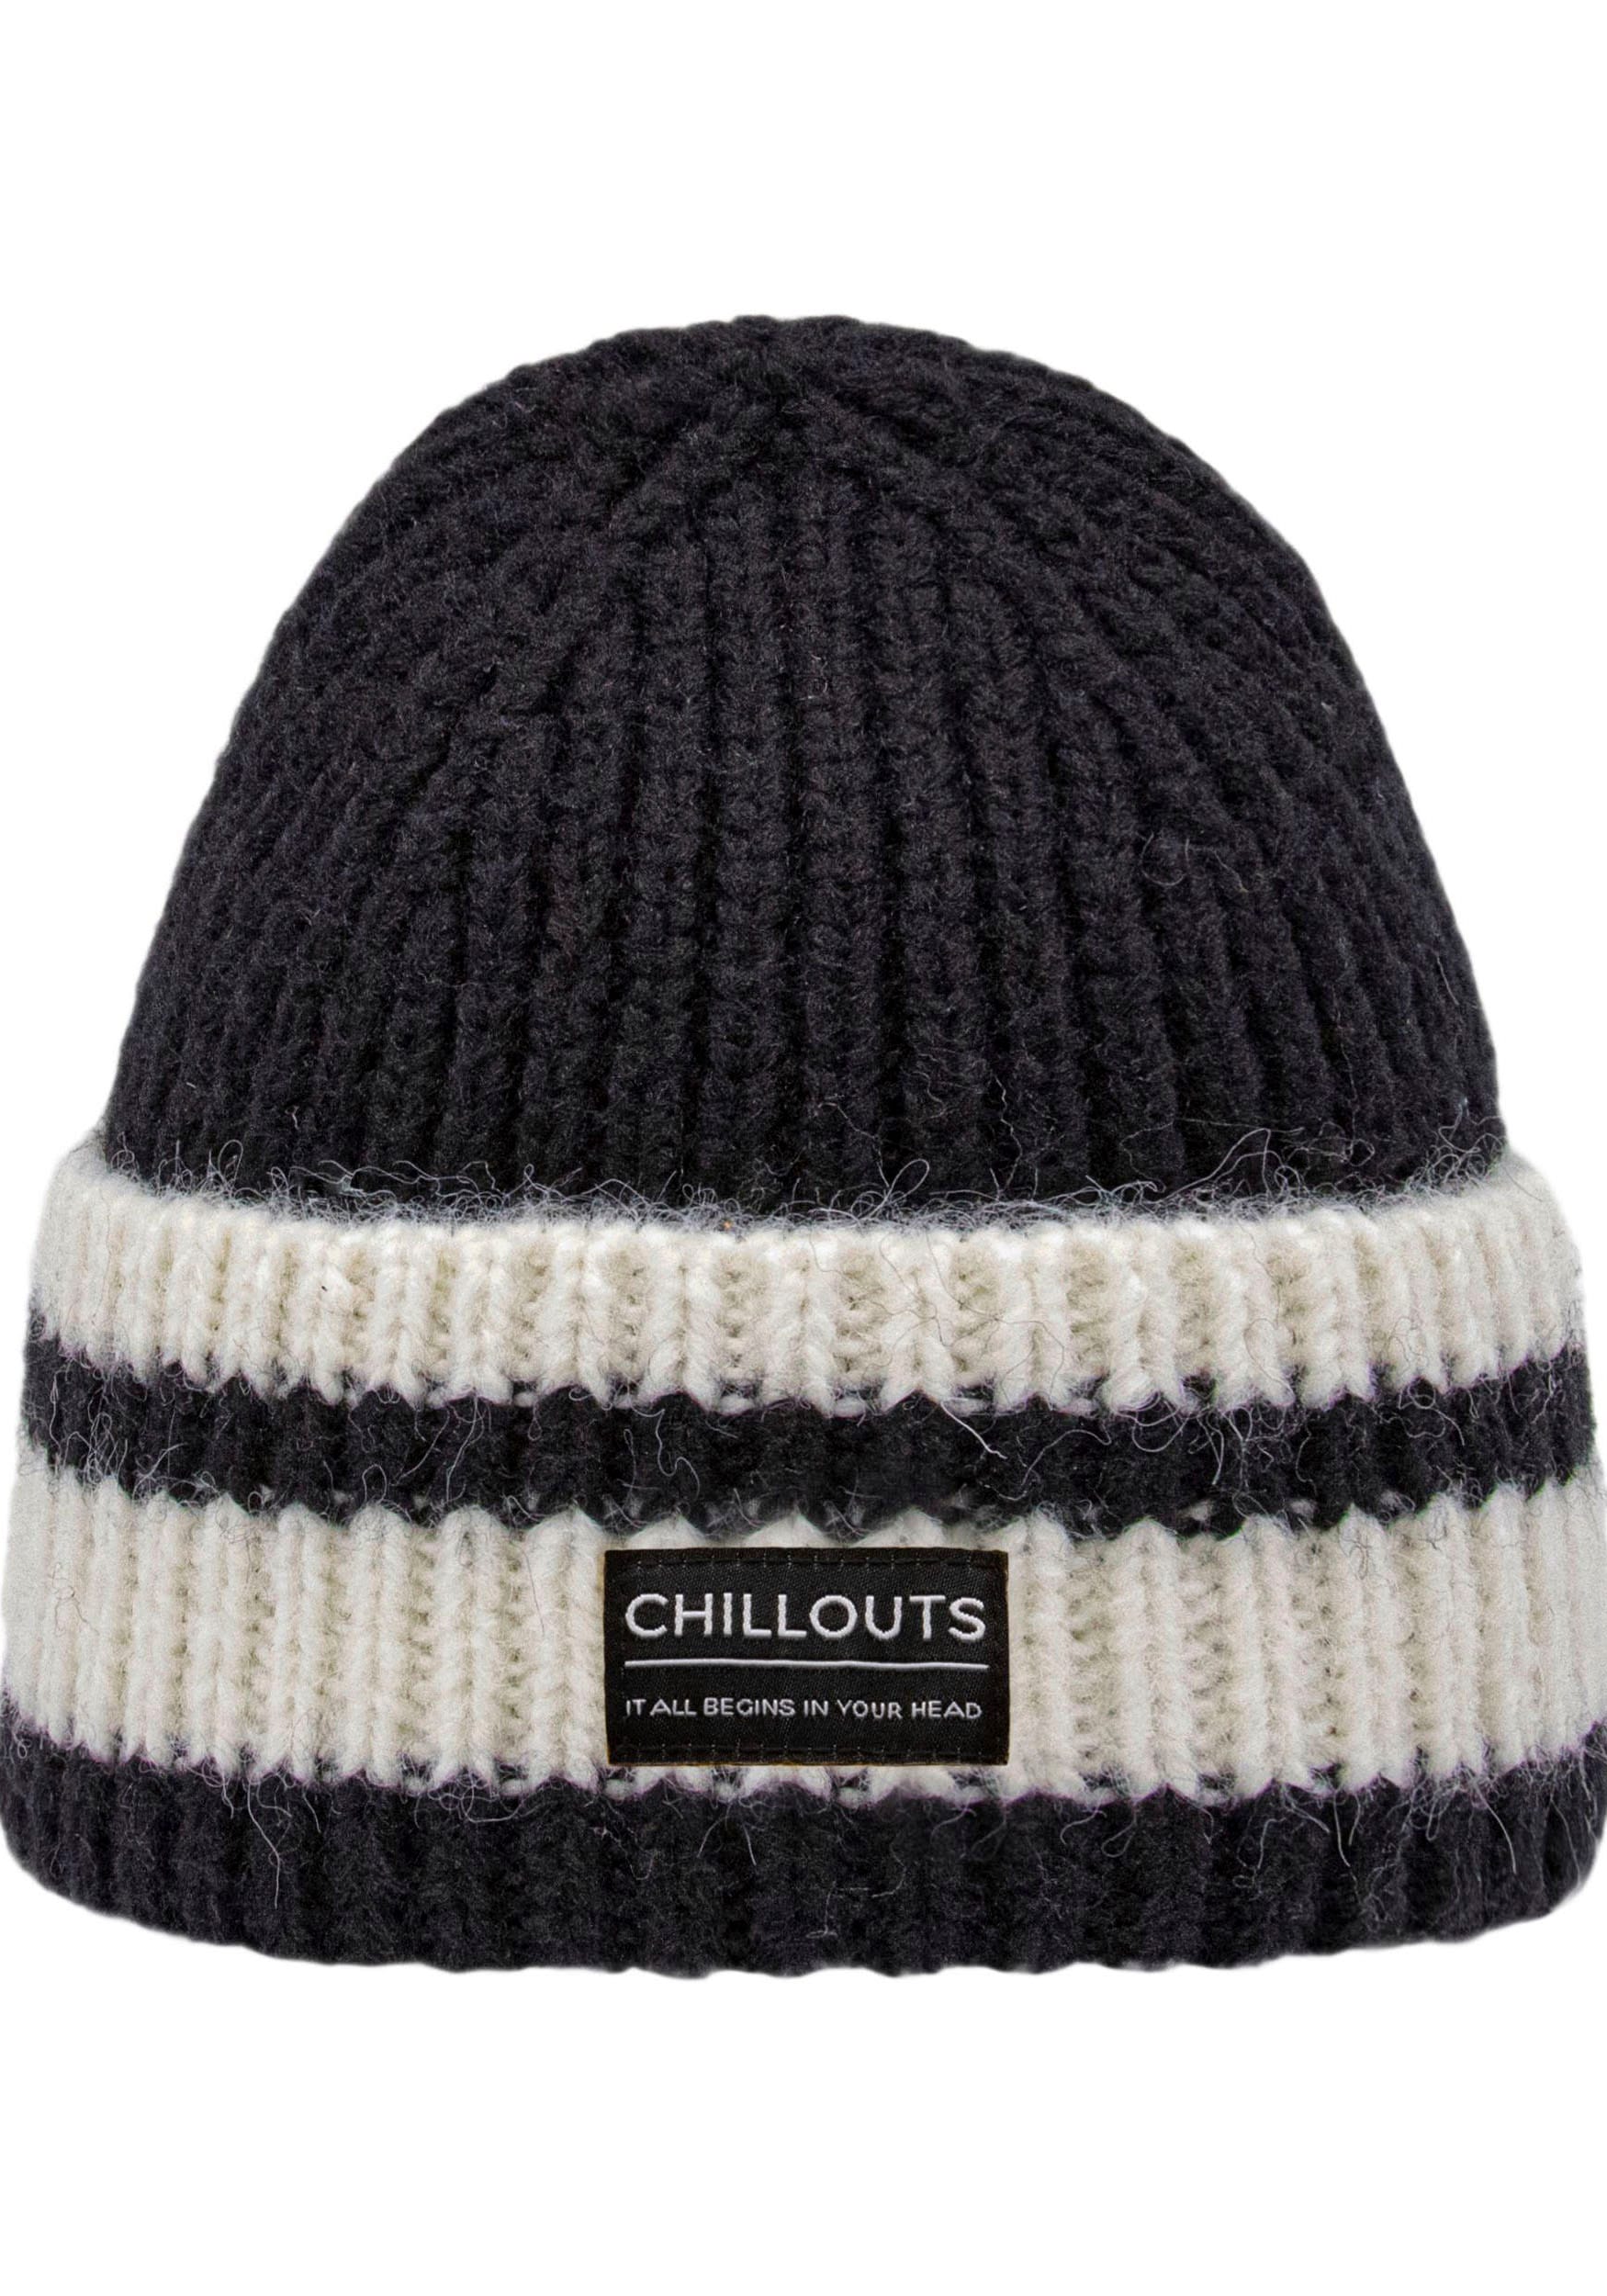 chillouts mit Kontrast-Streifen bei »Cooper online OTTO kaufen Hat«, Strickmütze